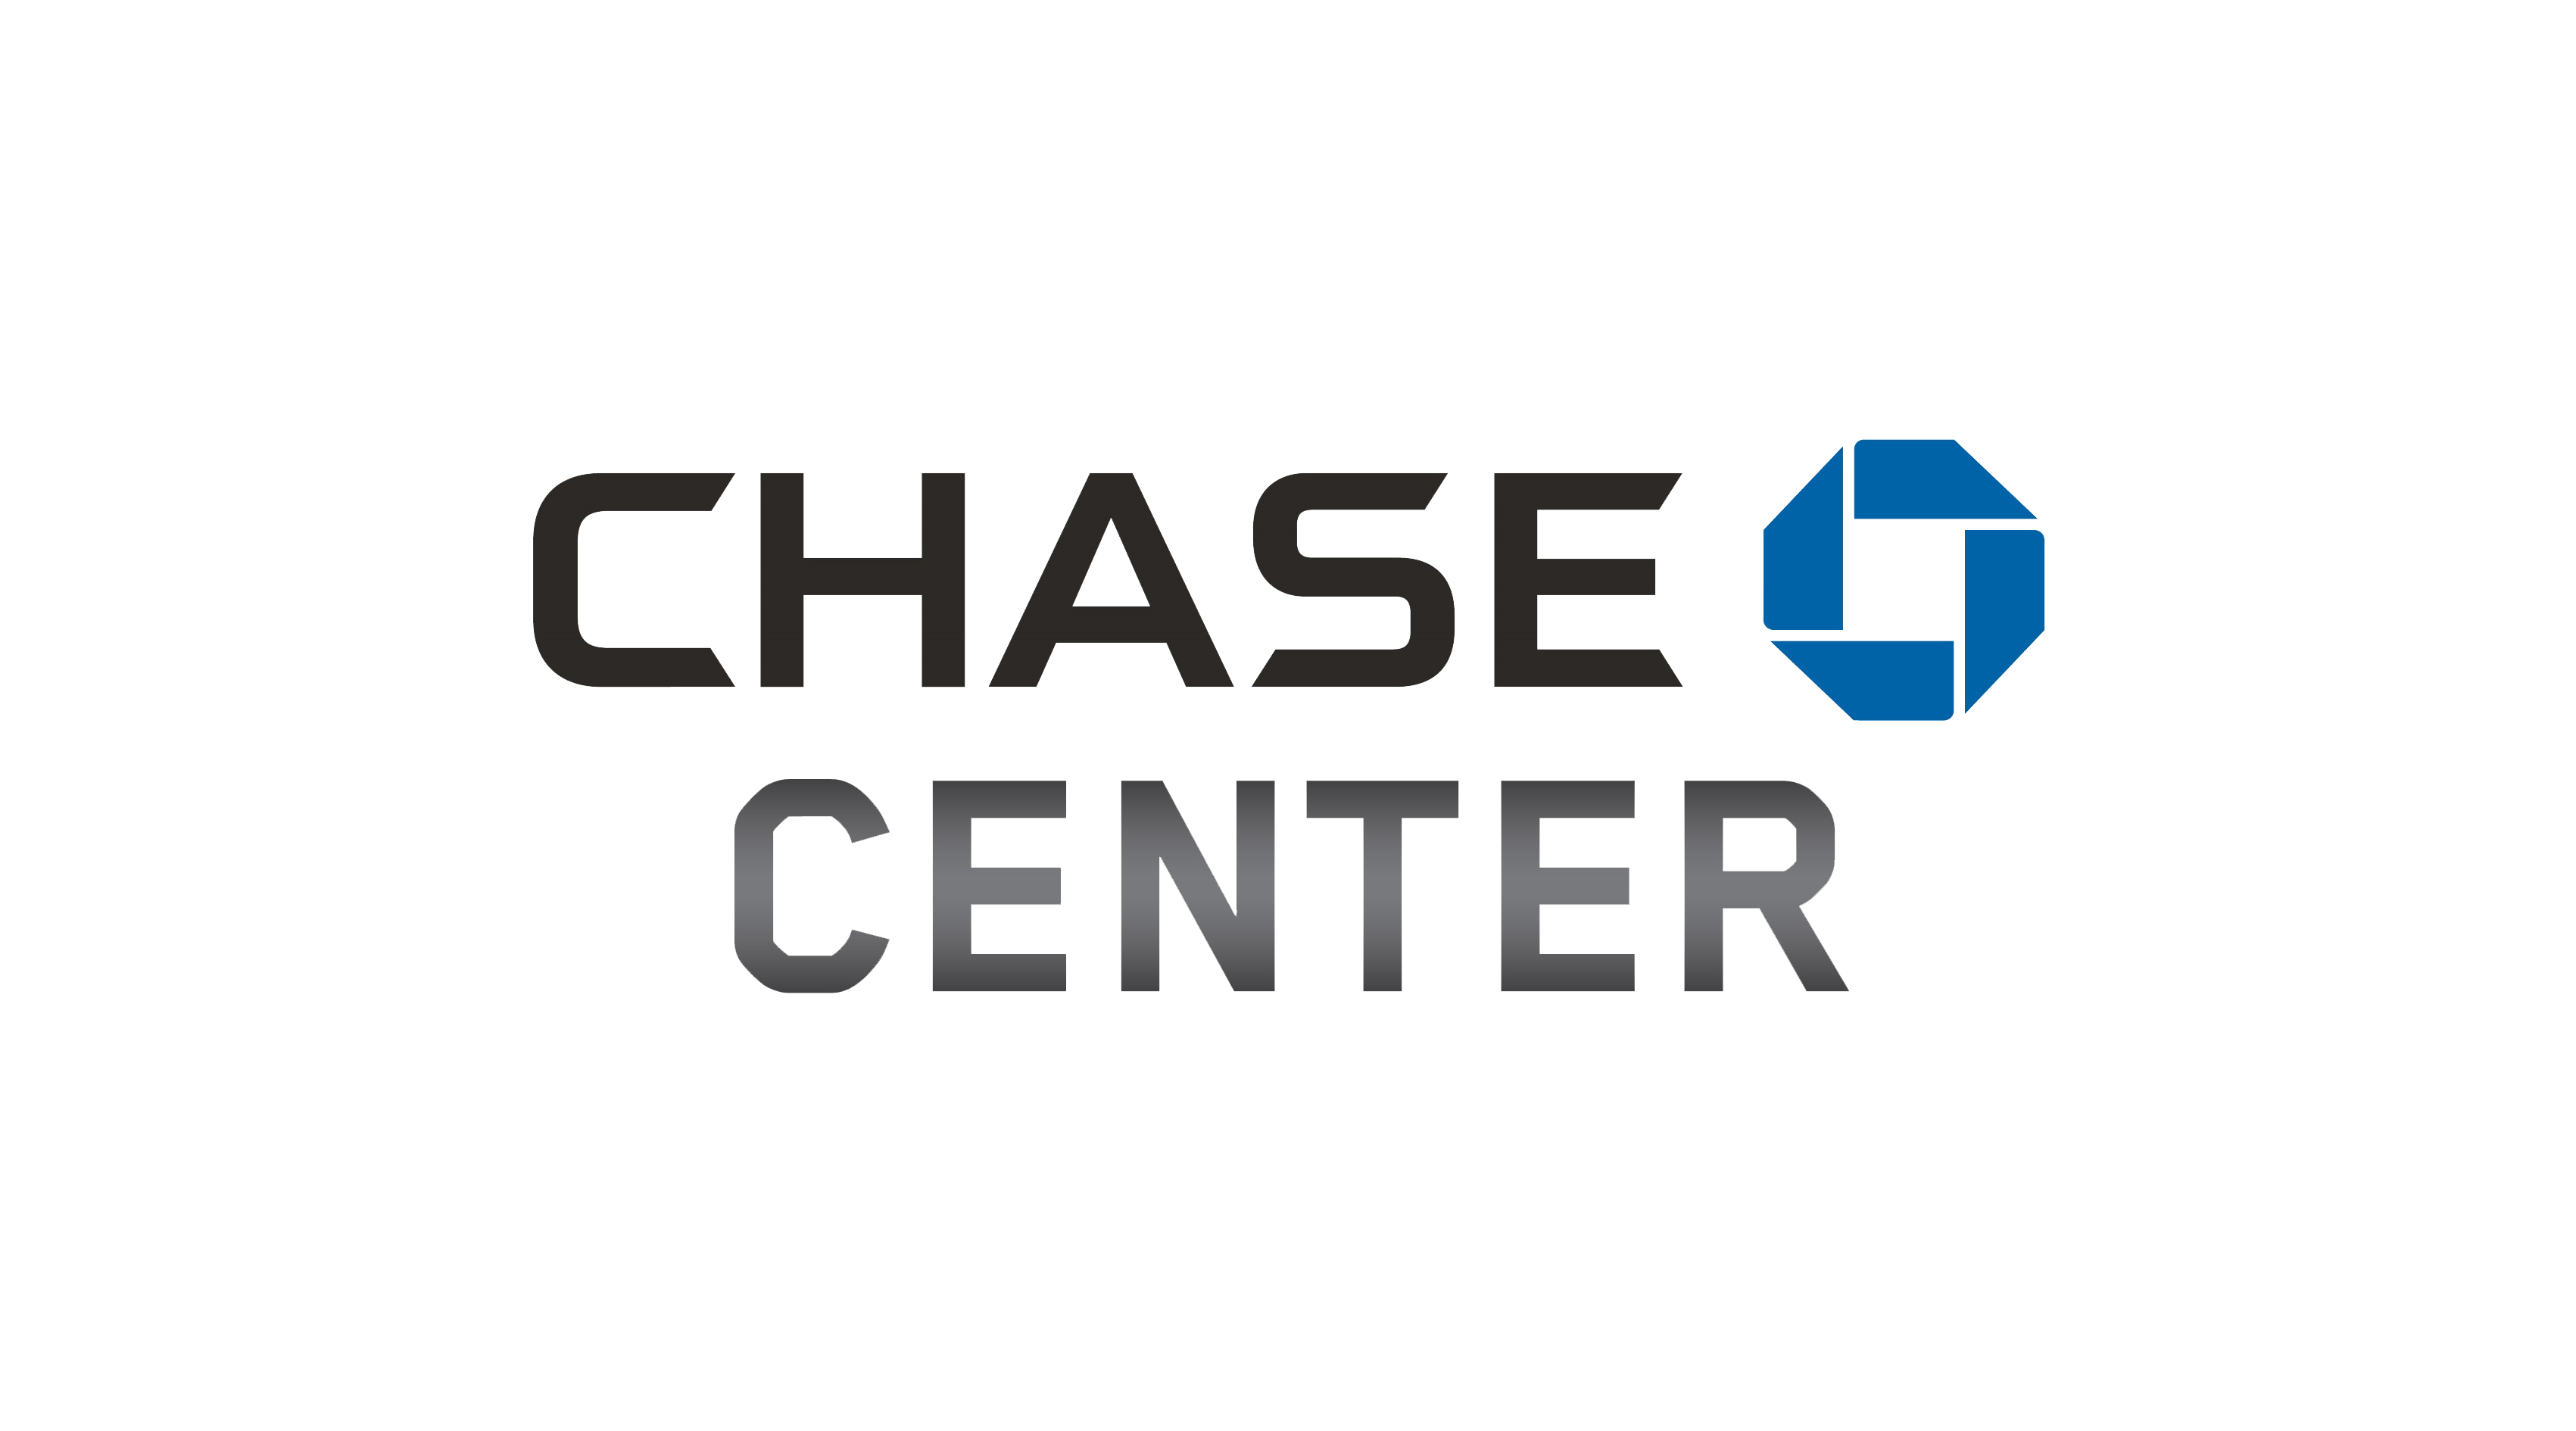 chase-center-logo